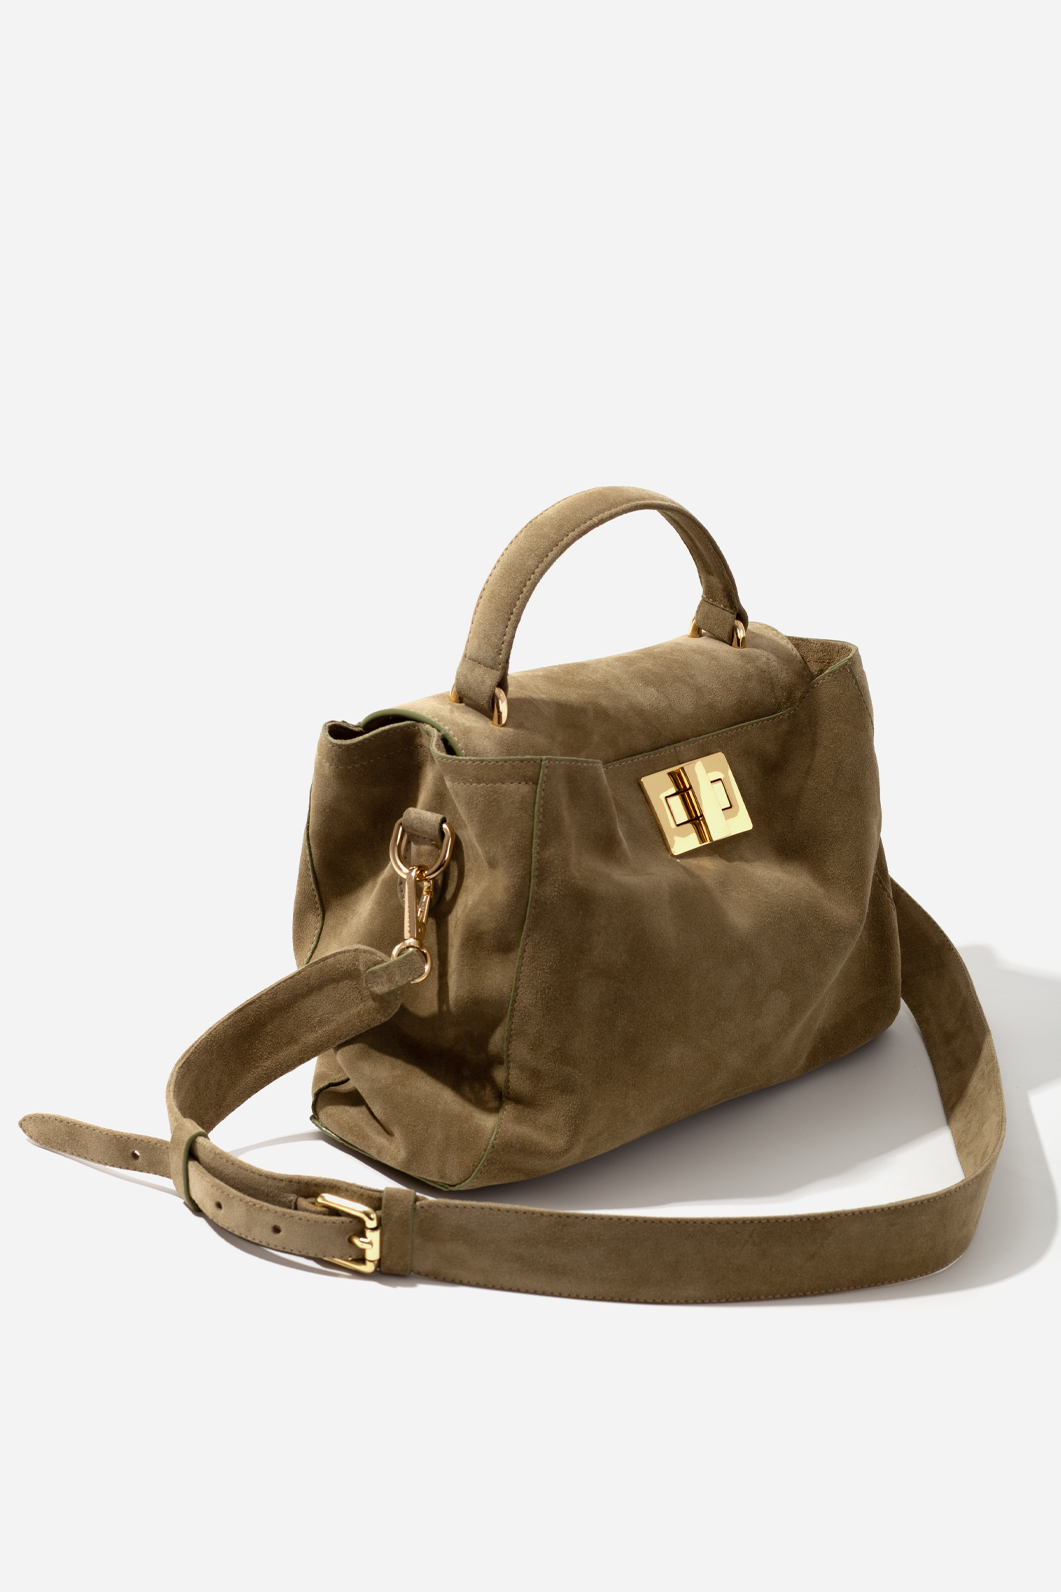 ERNA SOFT olive suede leather bag /gold/